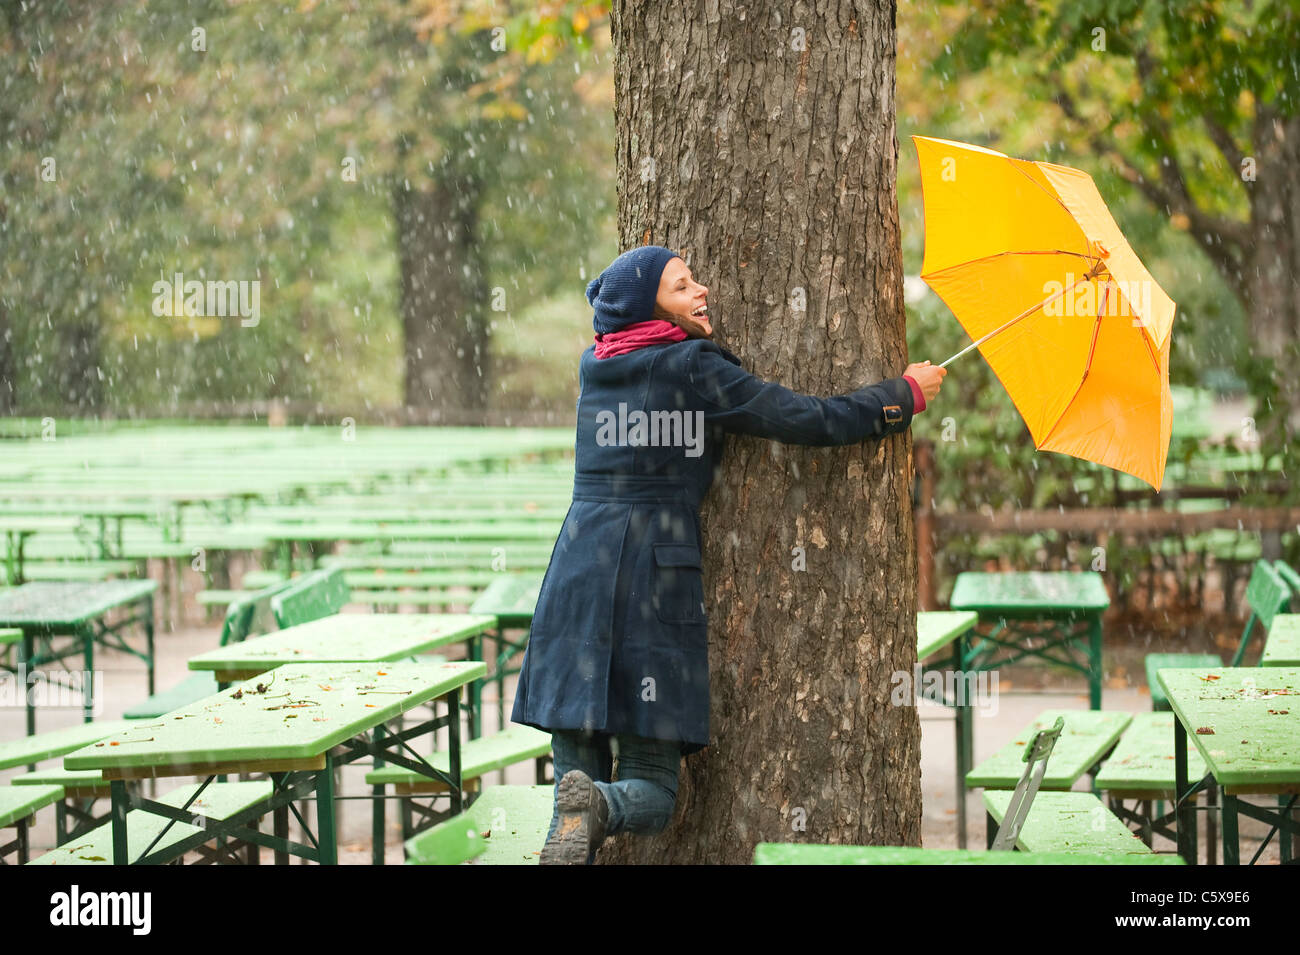 Deutschland, Bayern, München, englischer Garten, Frau im Biergarten Baum umarmen, halten Regenschirm, lachen Stockfoto